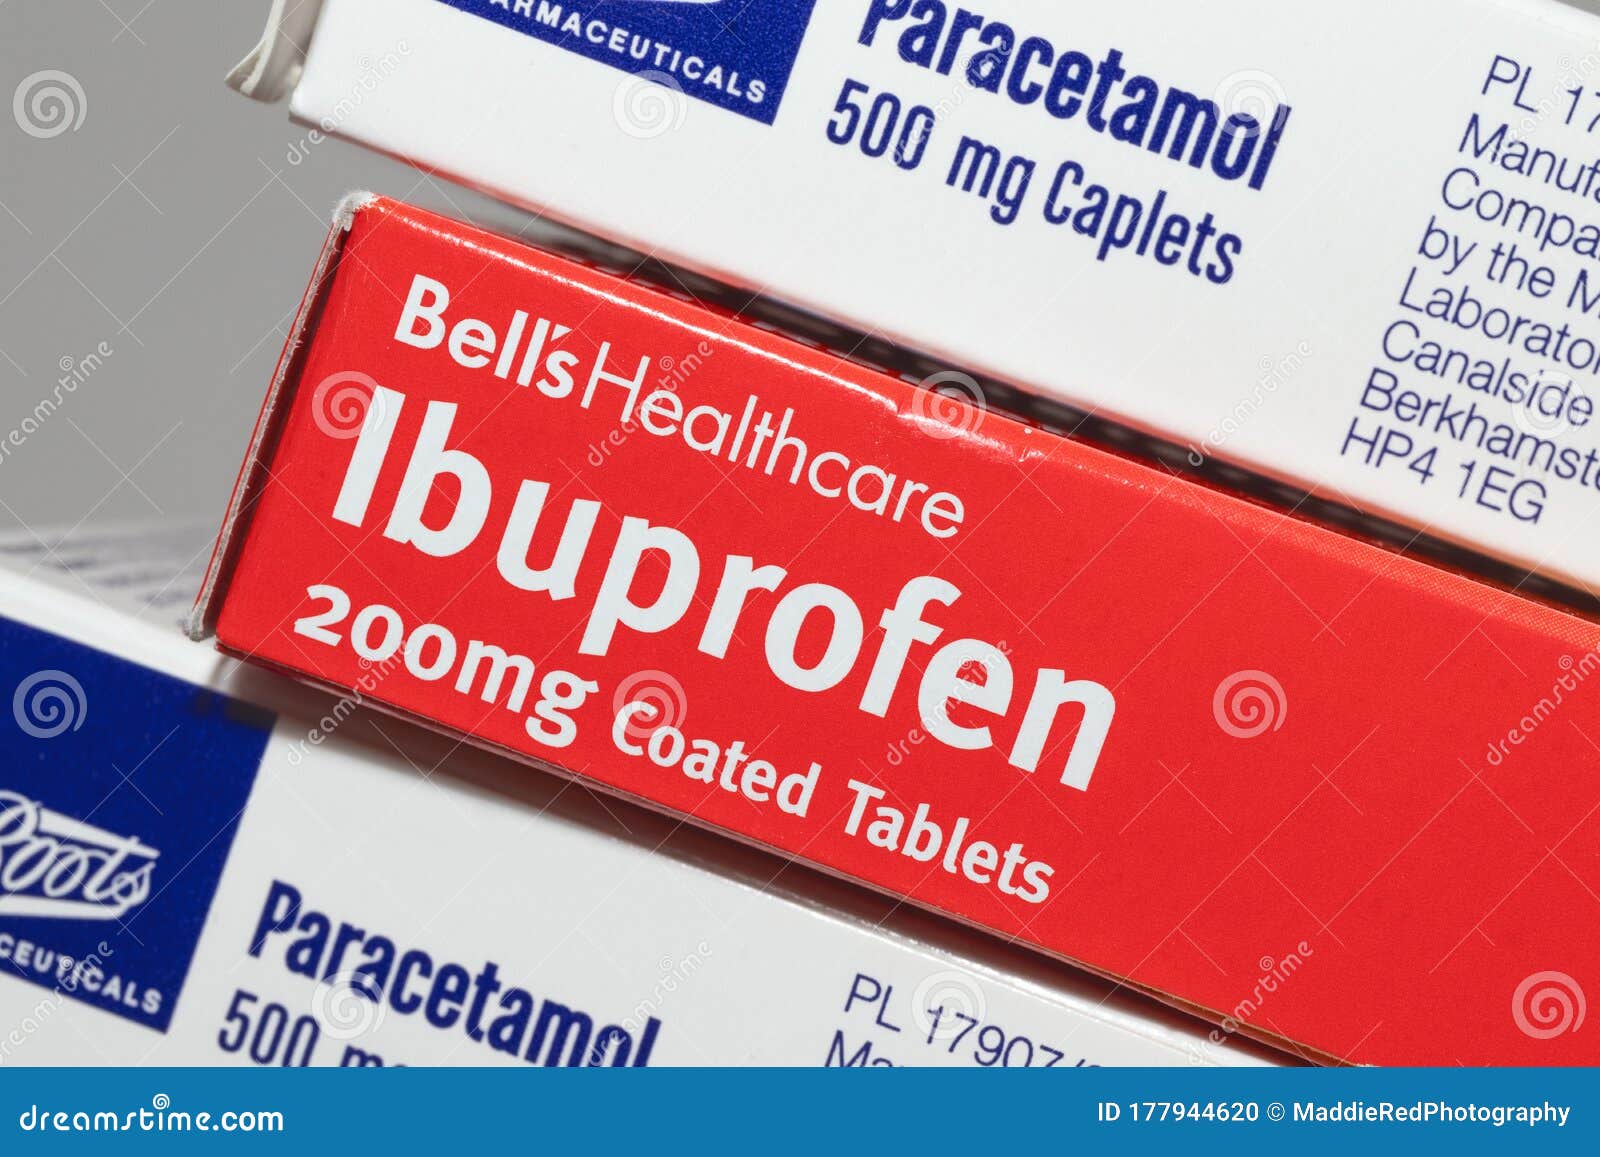 Que tomar para las anginas paracetamol o ibuprofeno